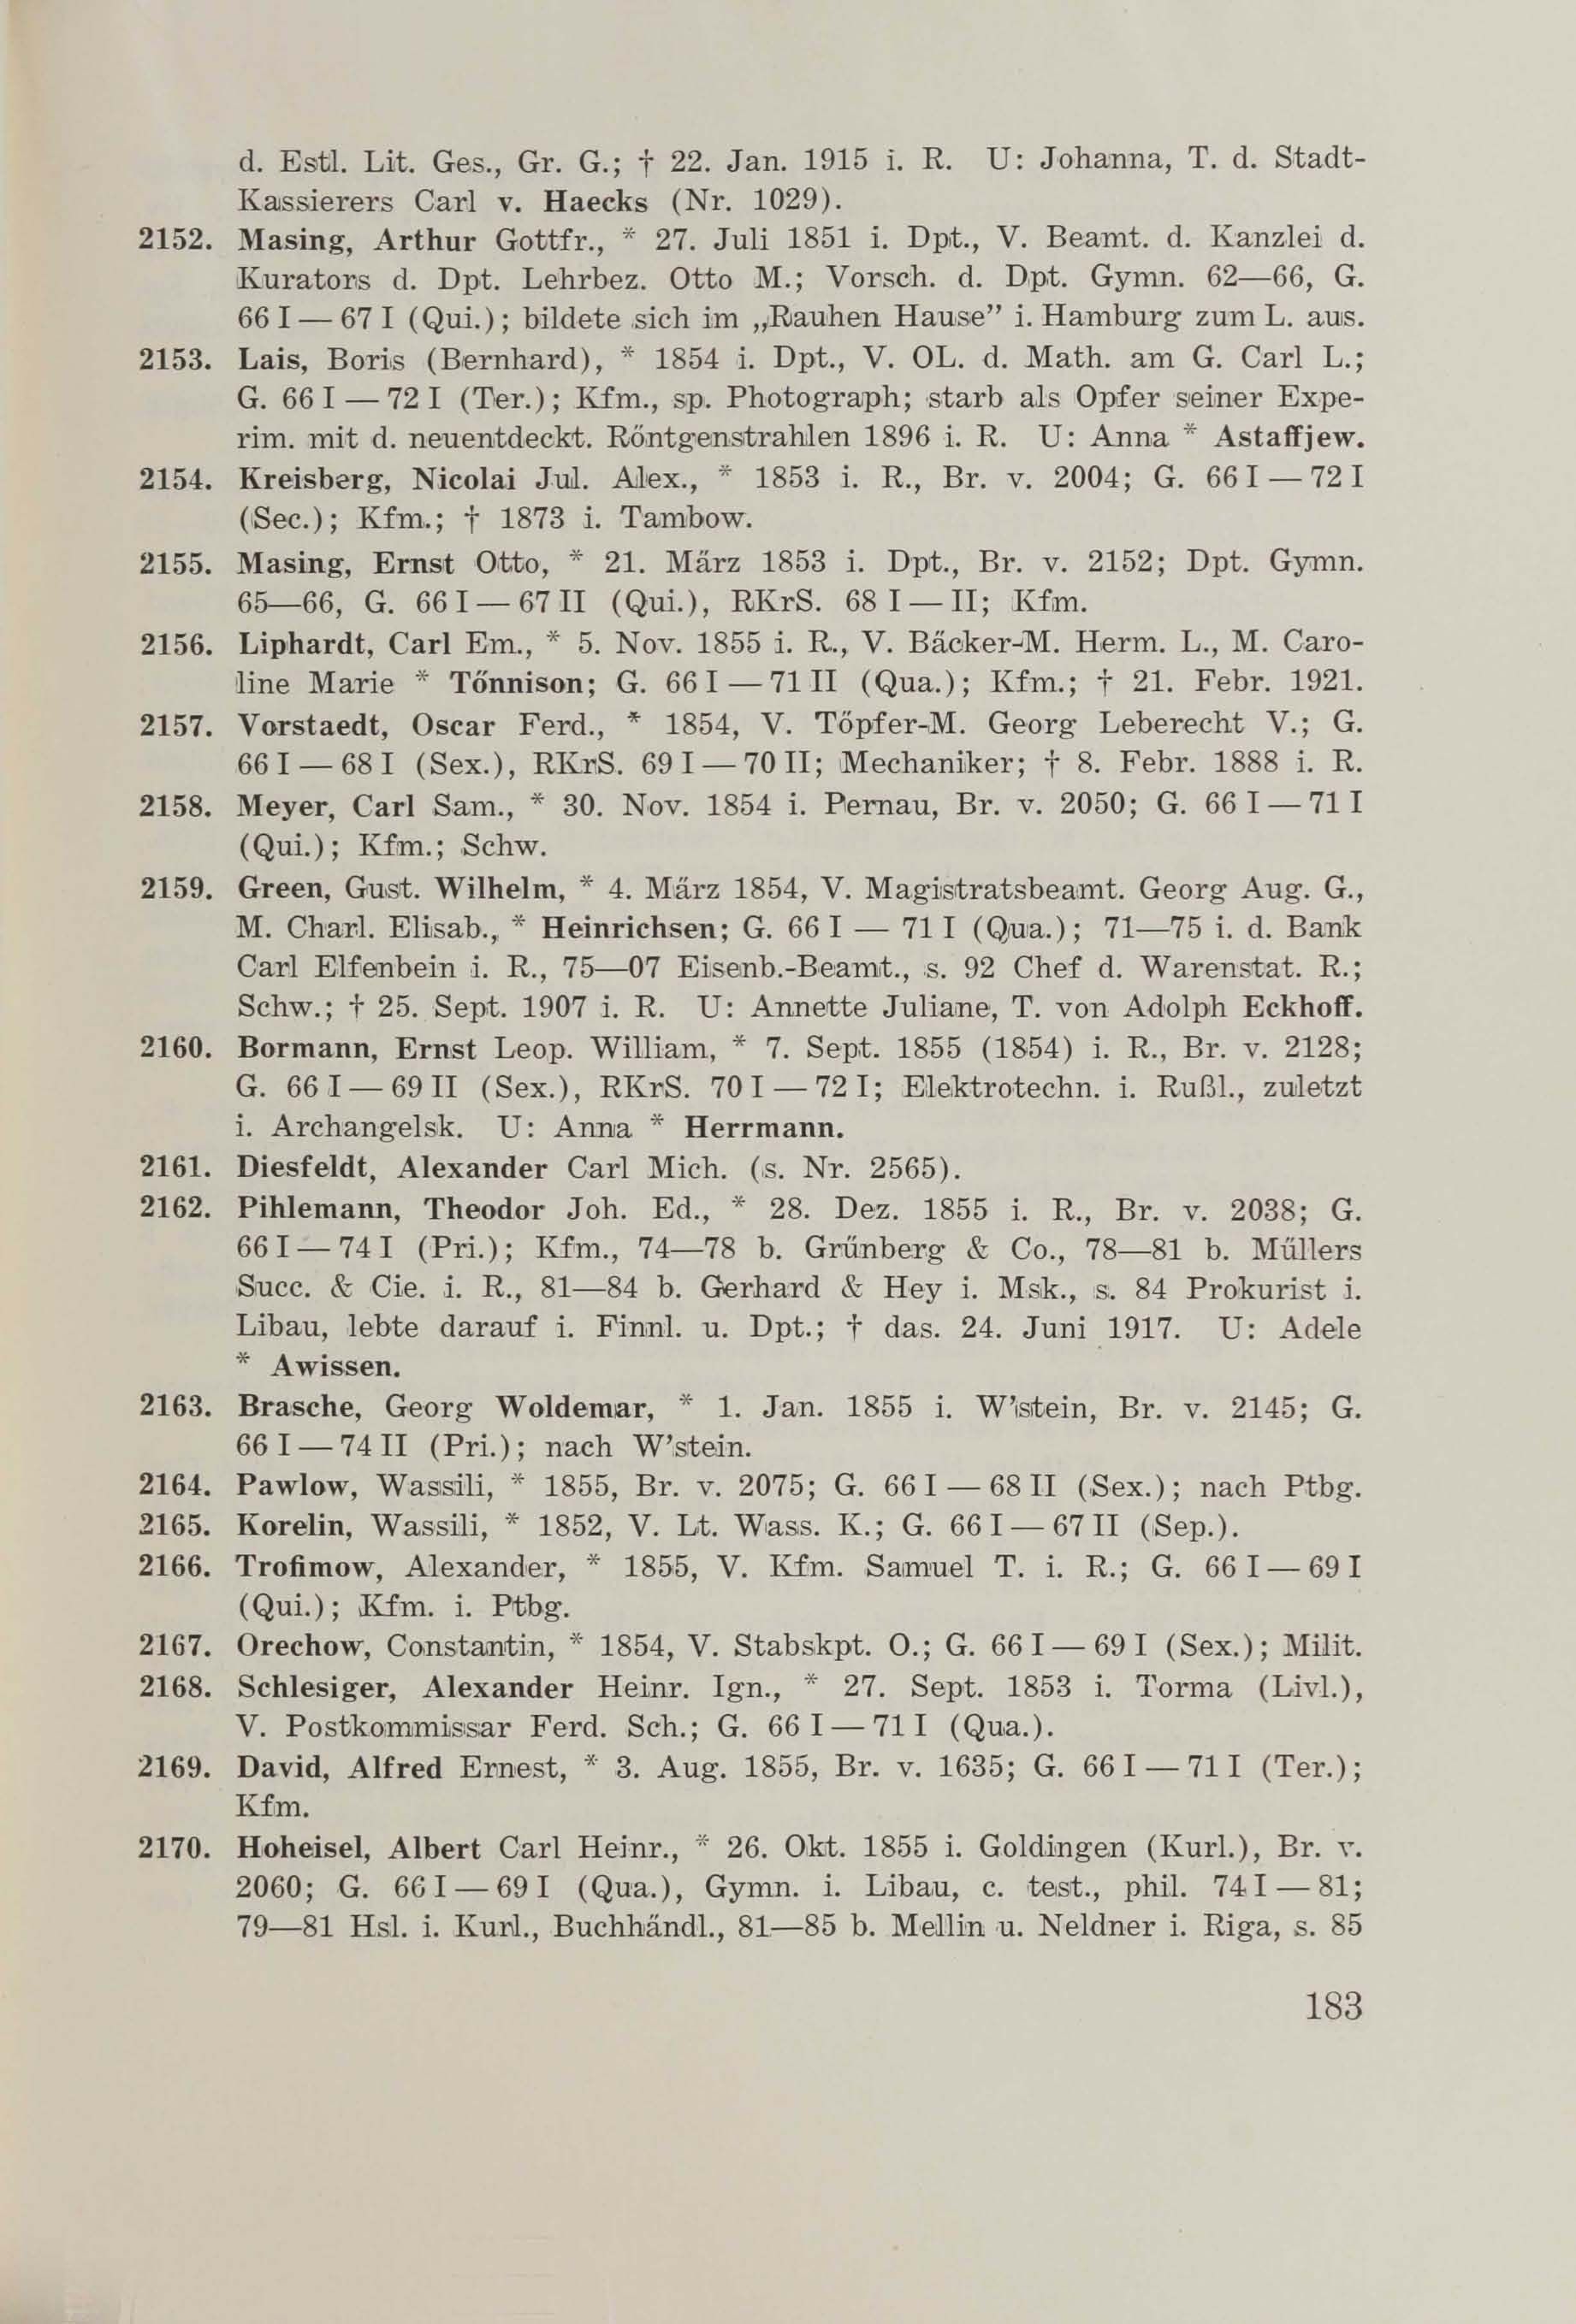 Schüler-Verzeichnis des Revalschen Gouvernements-Gymnasiums 1805–1890 (1931) | 193. (183) Main body of text